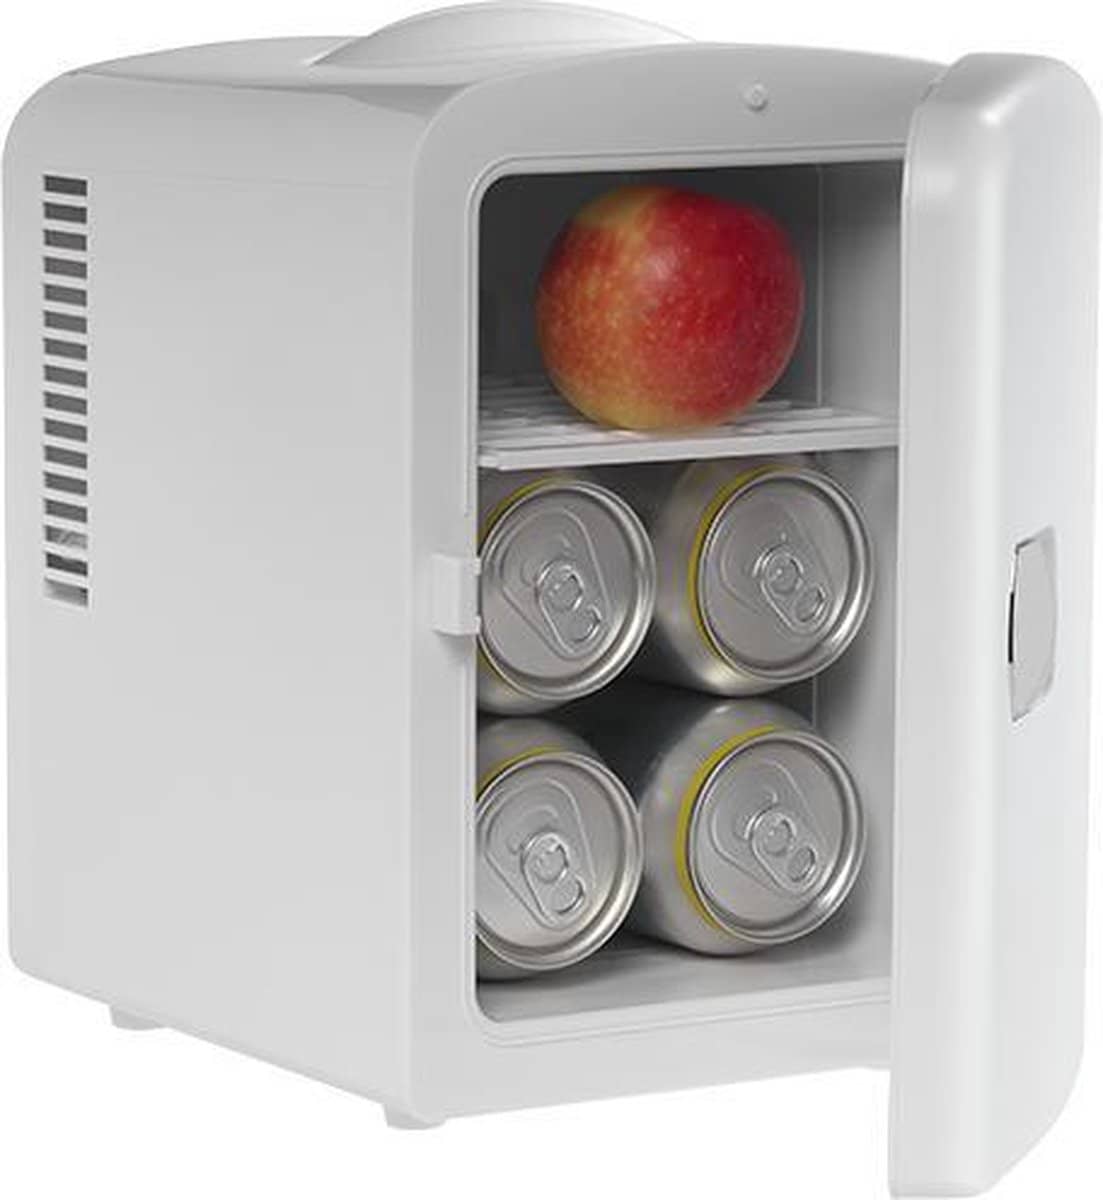 Denver Mini koelkast – Skincare Fridge. Geniet onderweg van een koud drankje